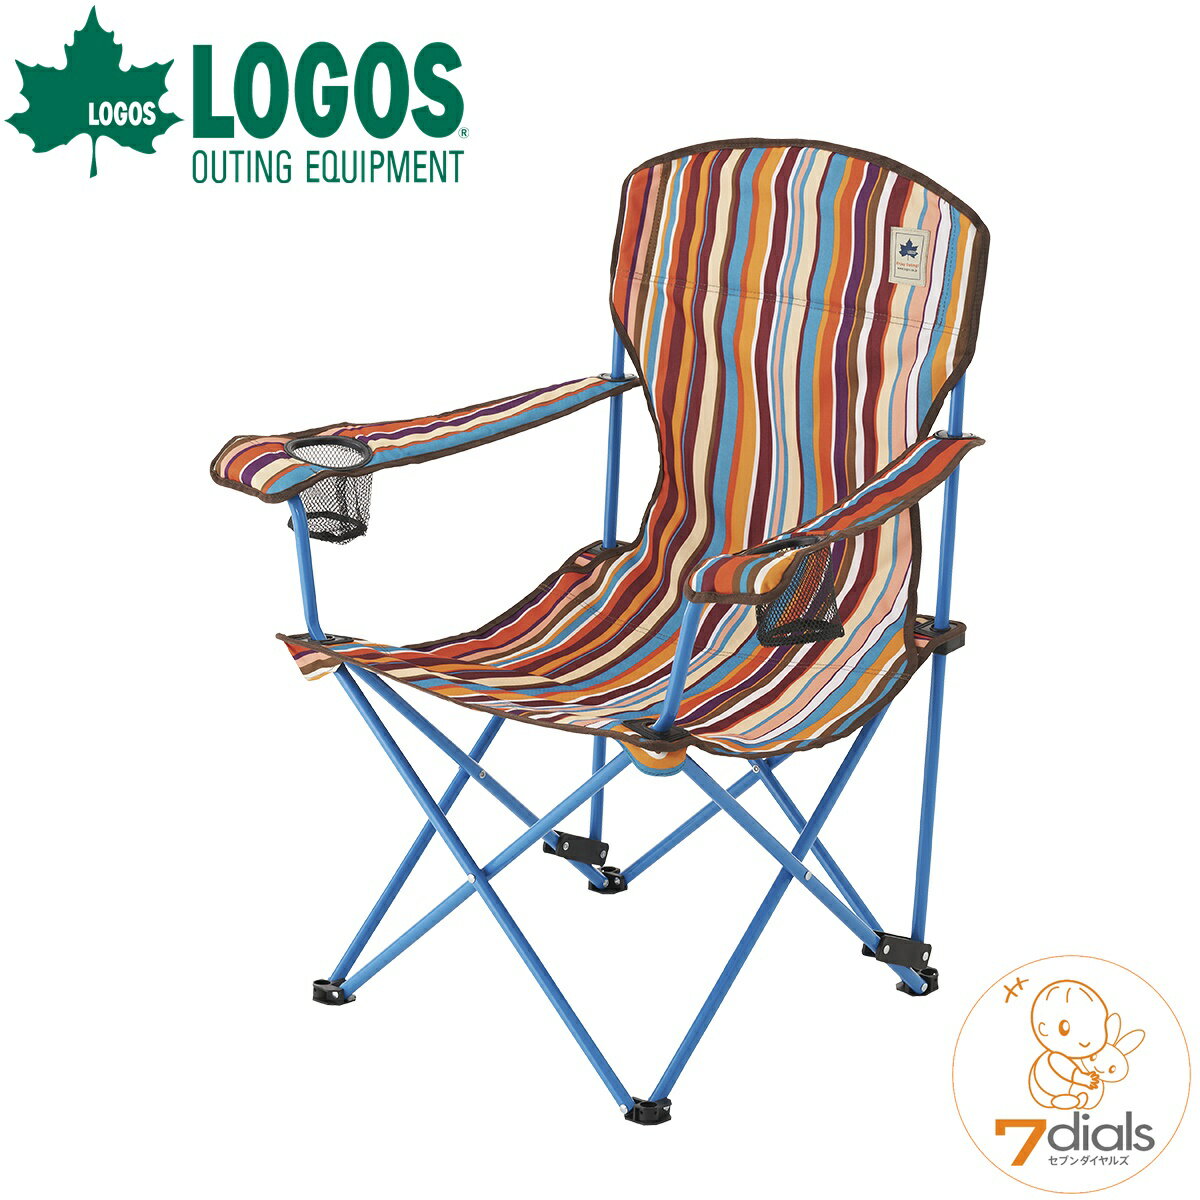 【あす楽】LOGOS/ロゴス リクライナーチェア(オレンジストライプ) 背もたれ2段階焼成可能なリクライニングチェア 椅子 アームレストにドリンクホルダー2個付き 収束型チェア 椅子